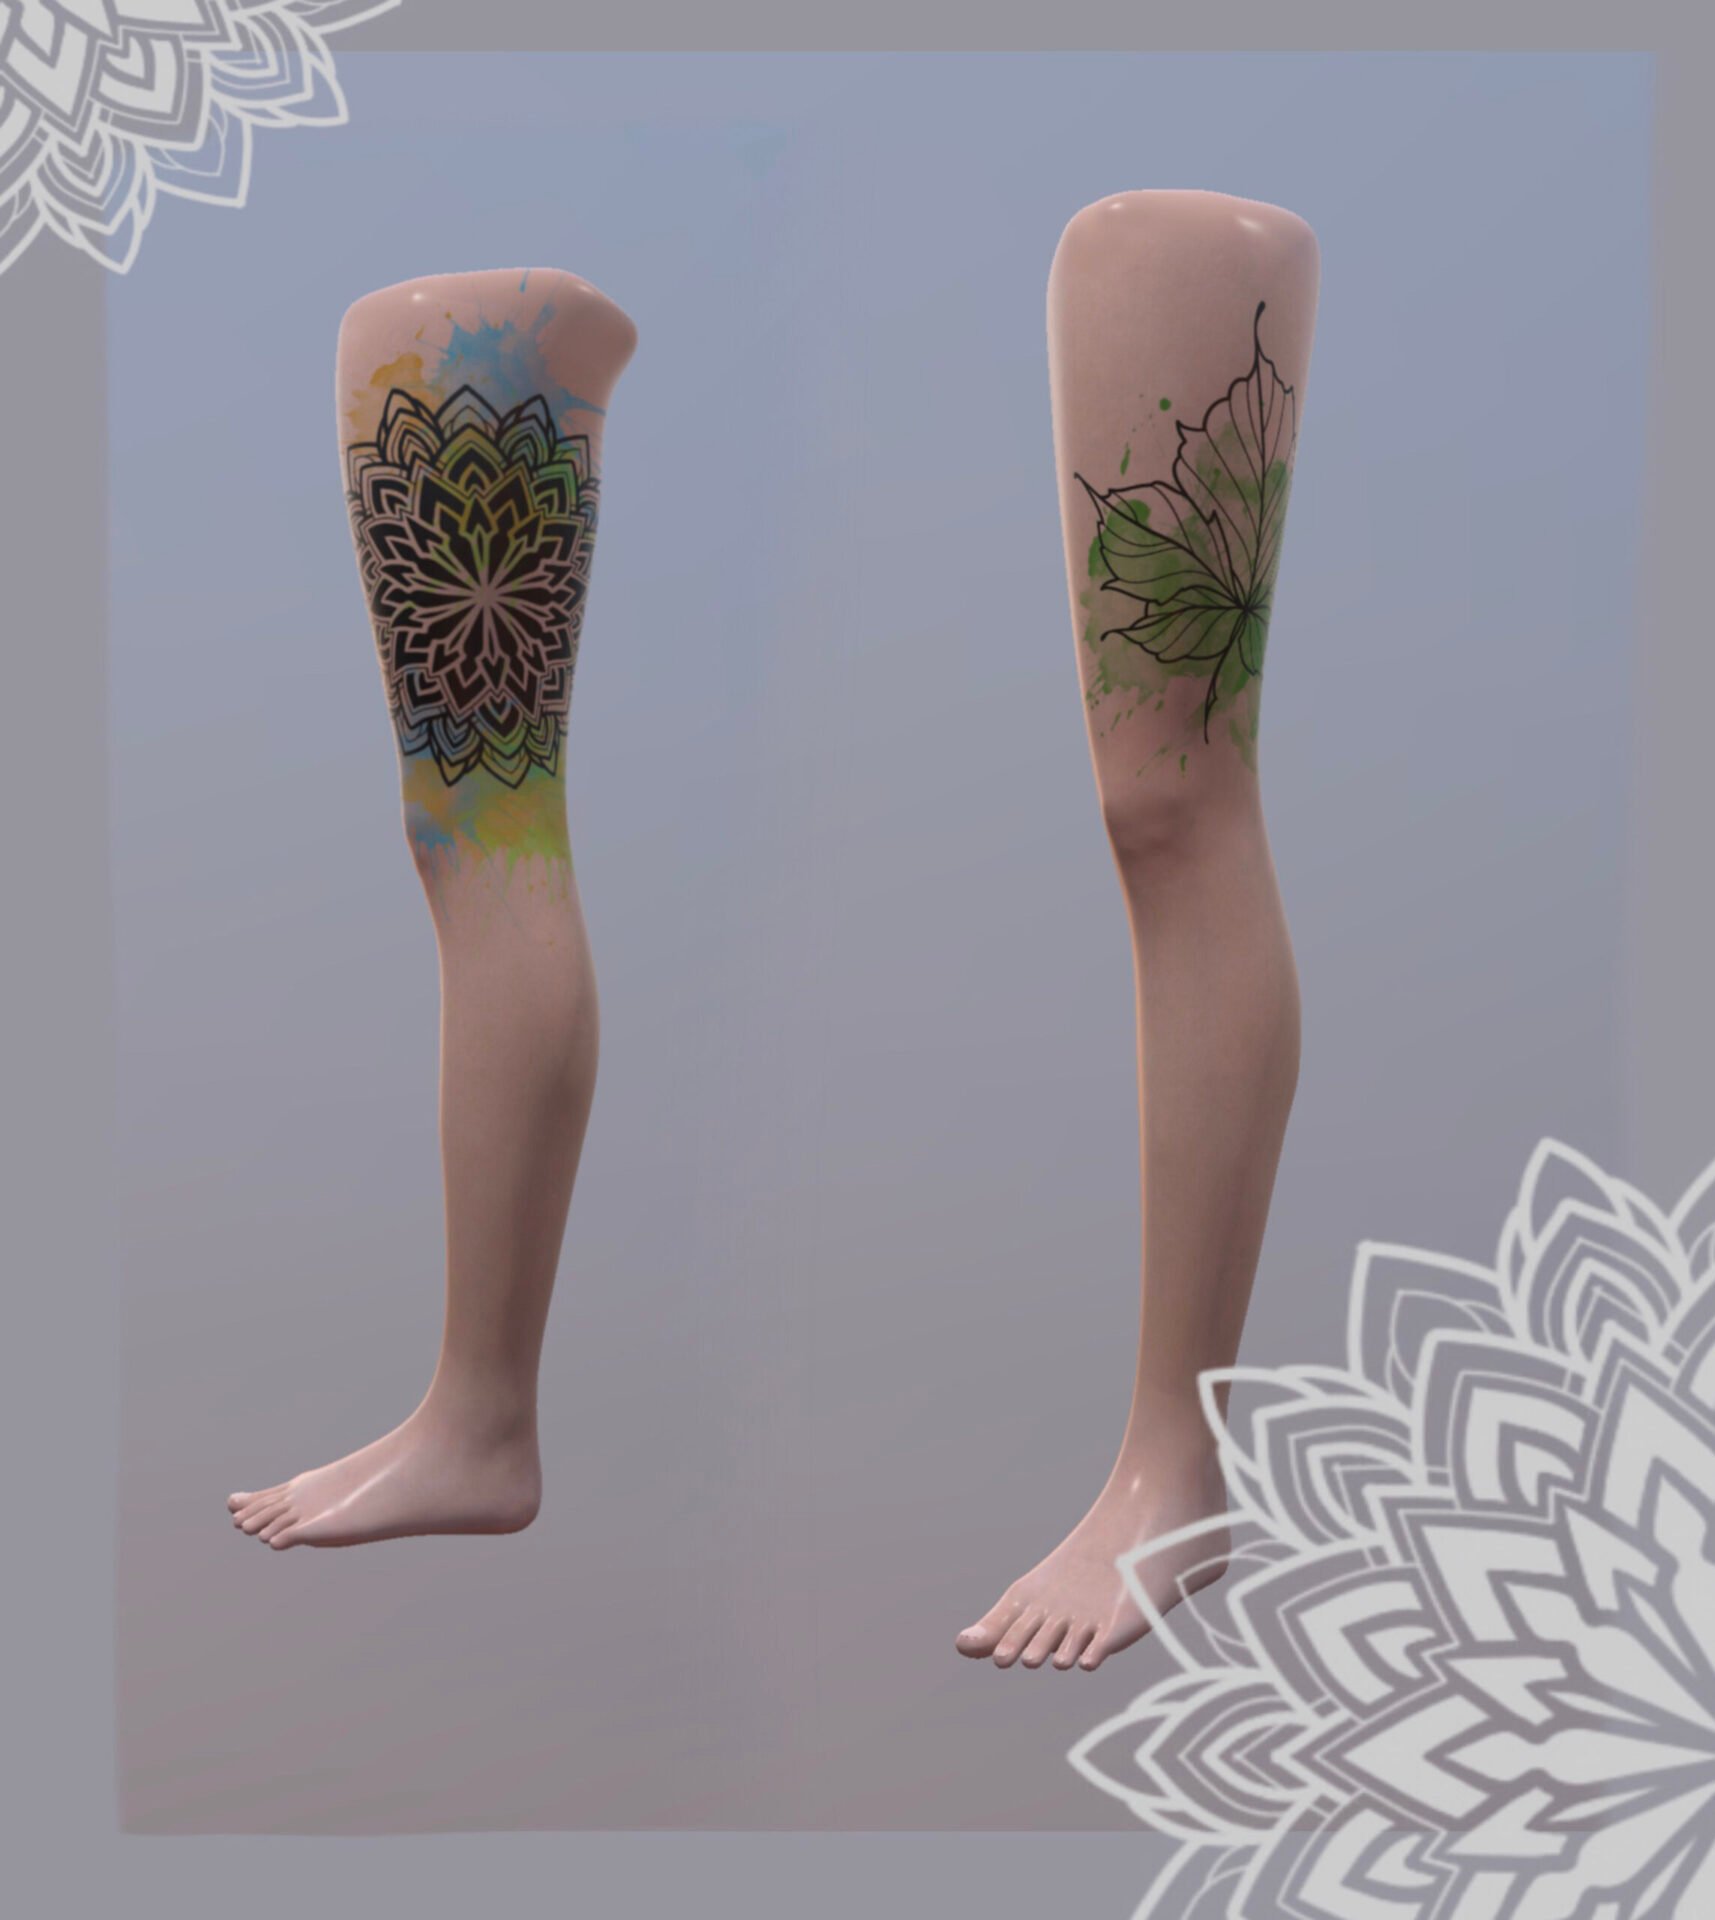 procreate 3d models free tattoo